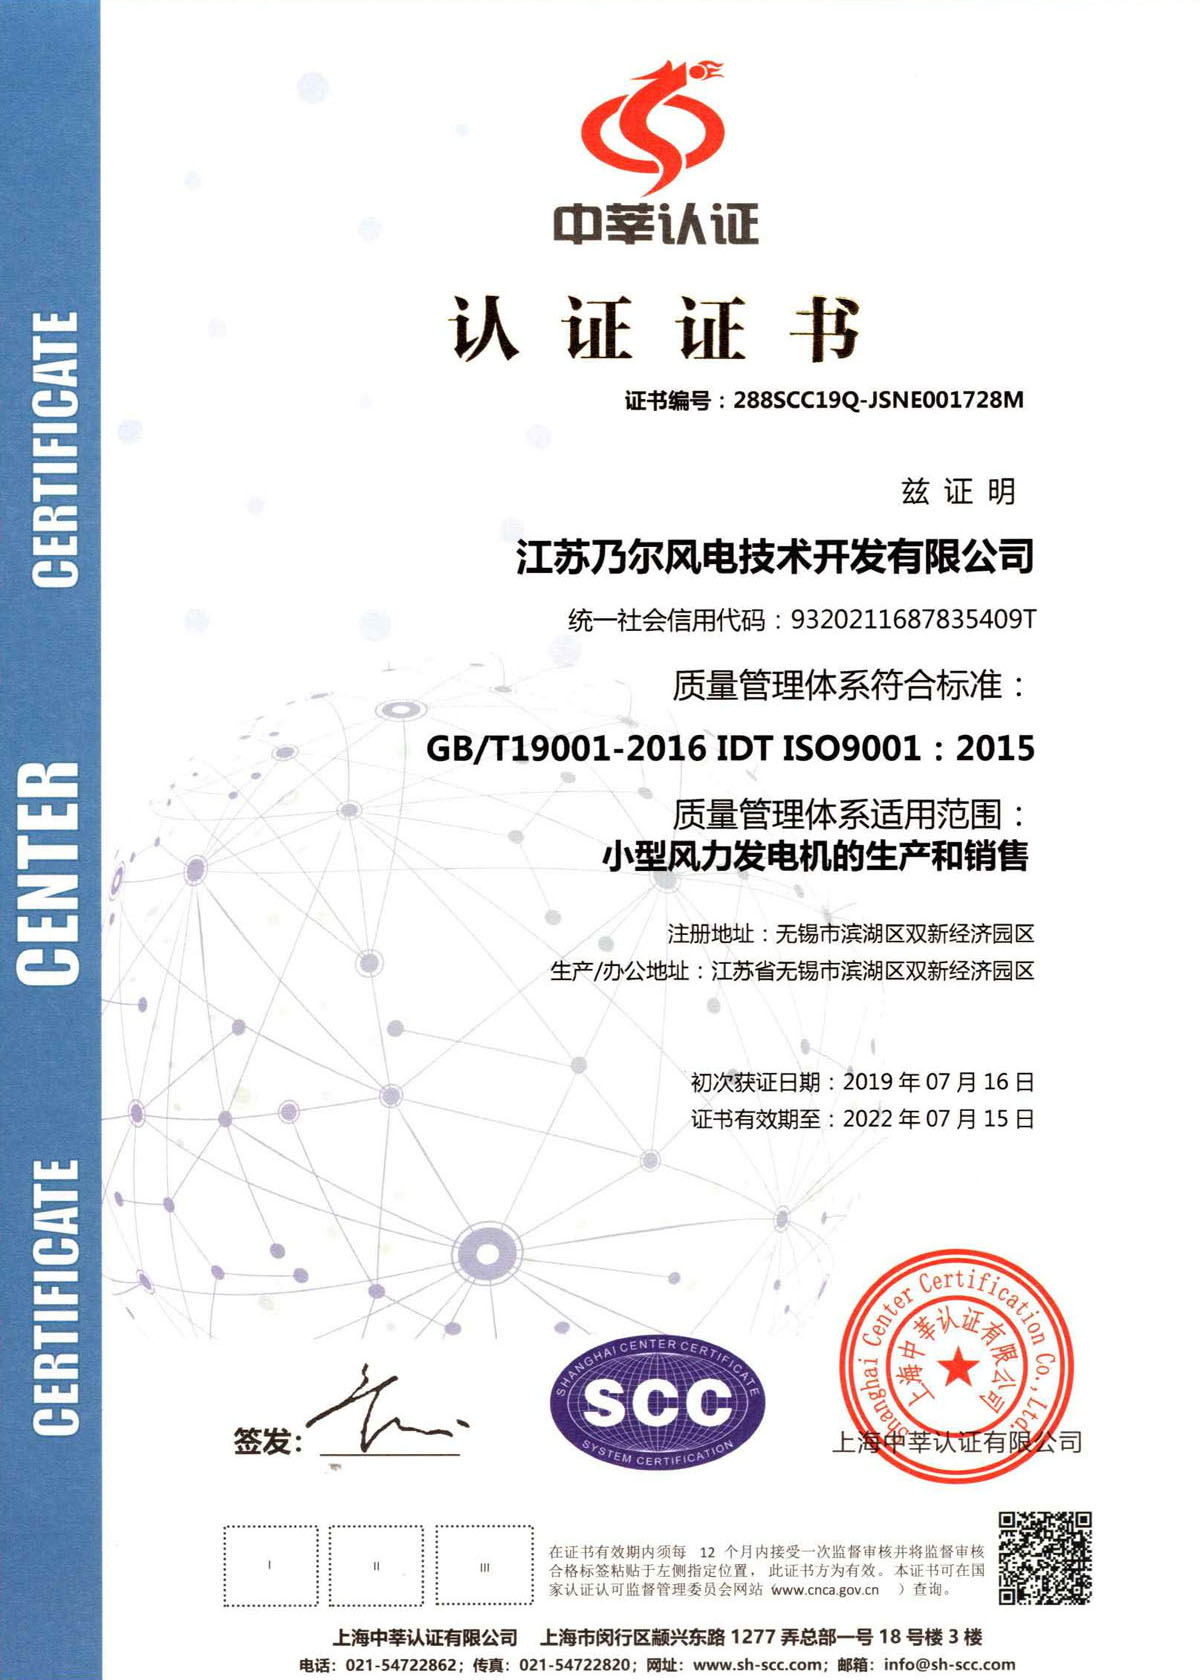 质量治理系统认证-中文证书